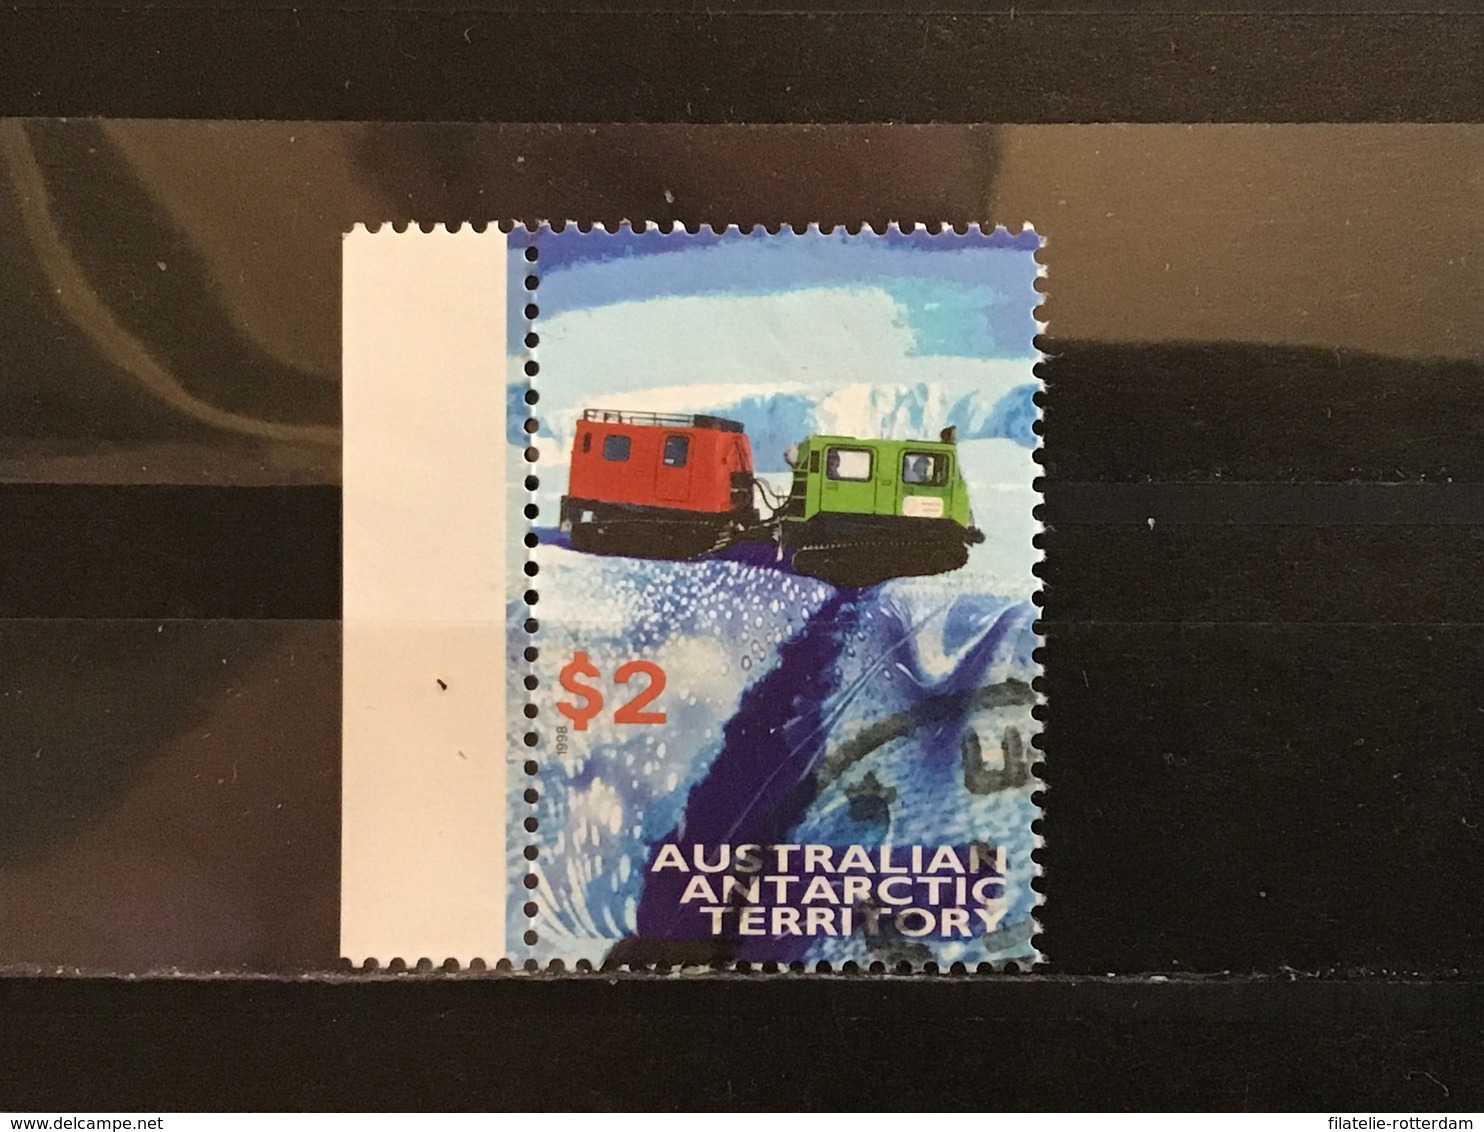 Australisch Antarctica / AAT - Transportmiddelen (2) 1998 - Used Stamps